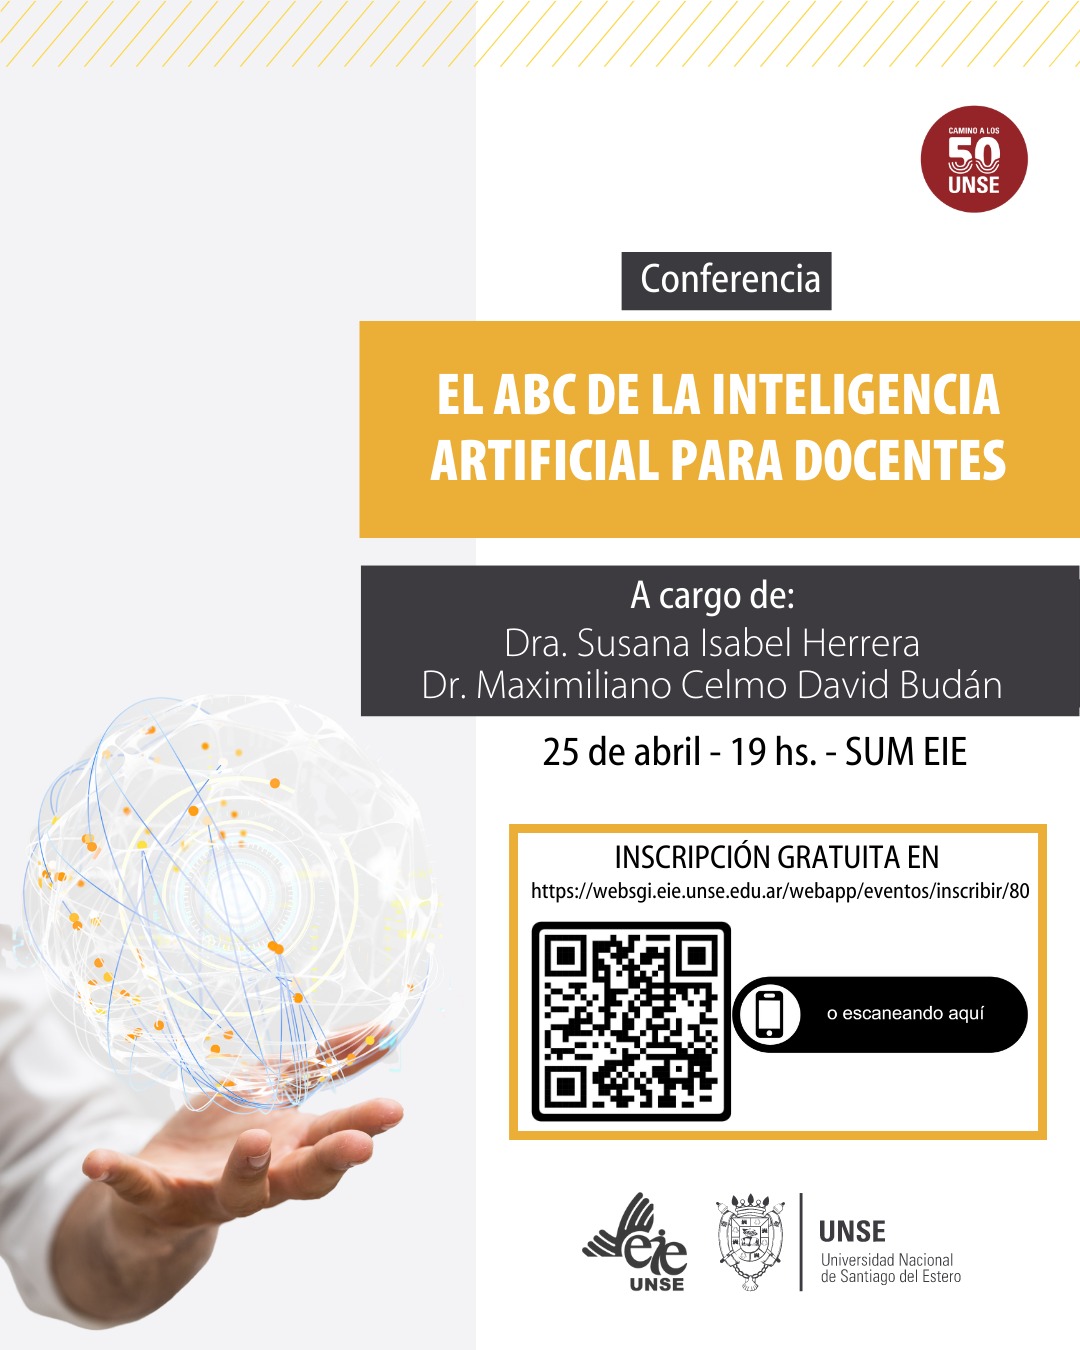 Conferencia "El abc de la inteligencia artificial para docentes"